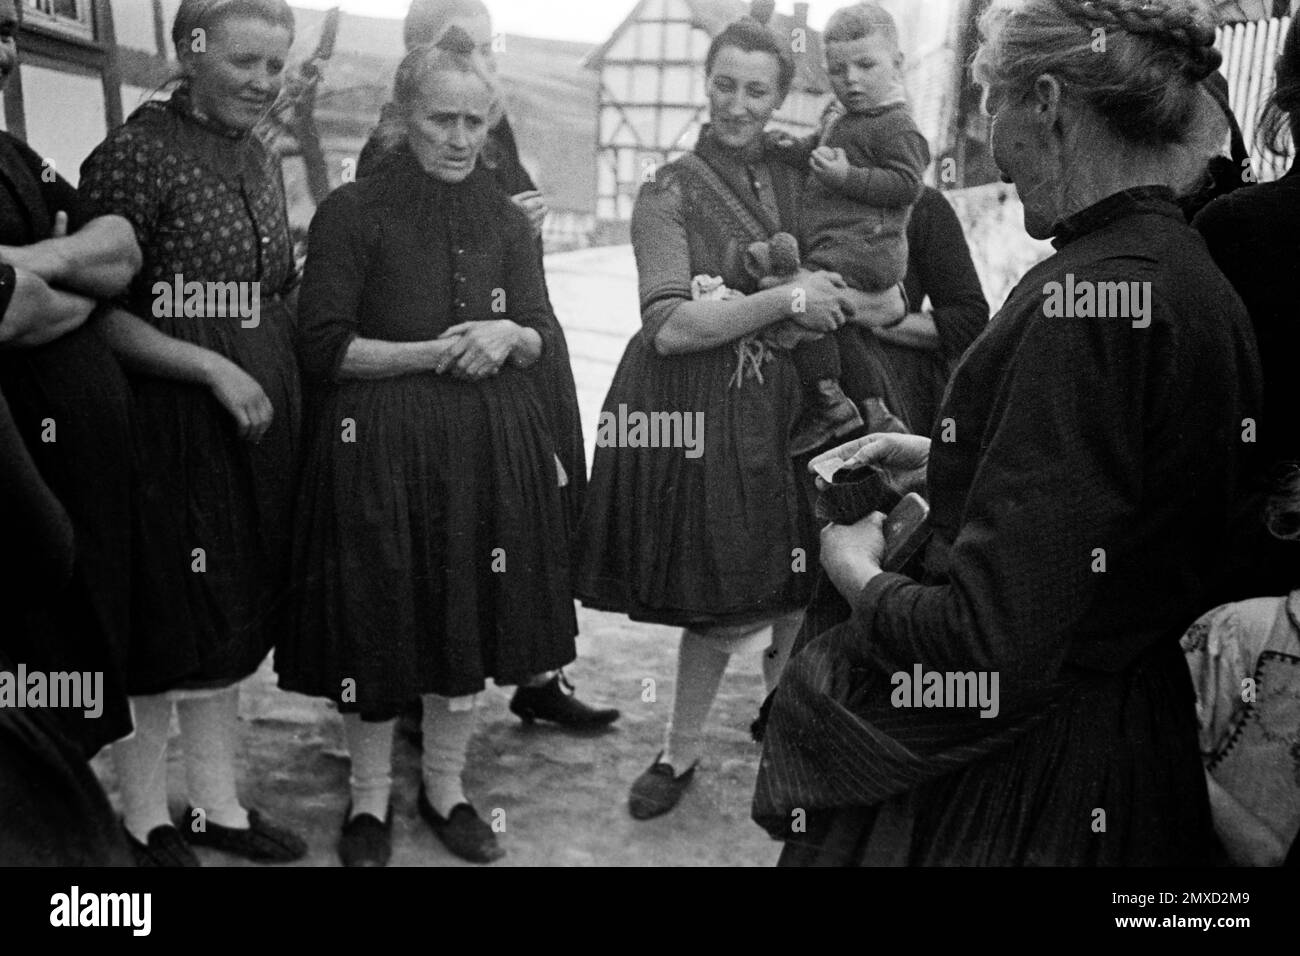 Dorffrauen am Ostersonntag, Schwalm-Eder-Kreis in Hessen, 1938. Village women on Easter Sunday, Schwalm-Eder region in Hesse, 1938. Stock Photo